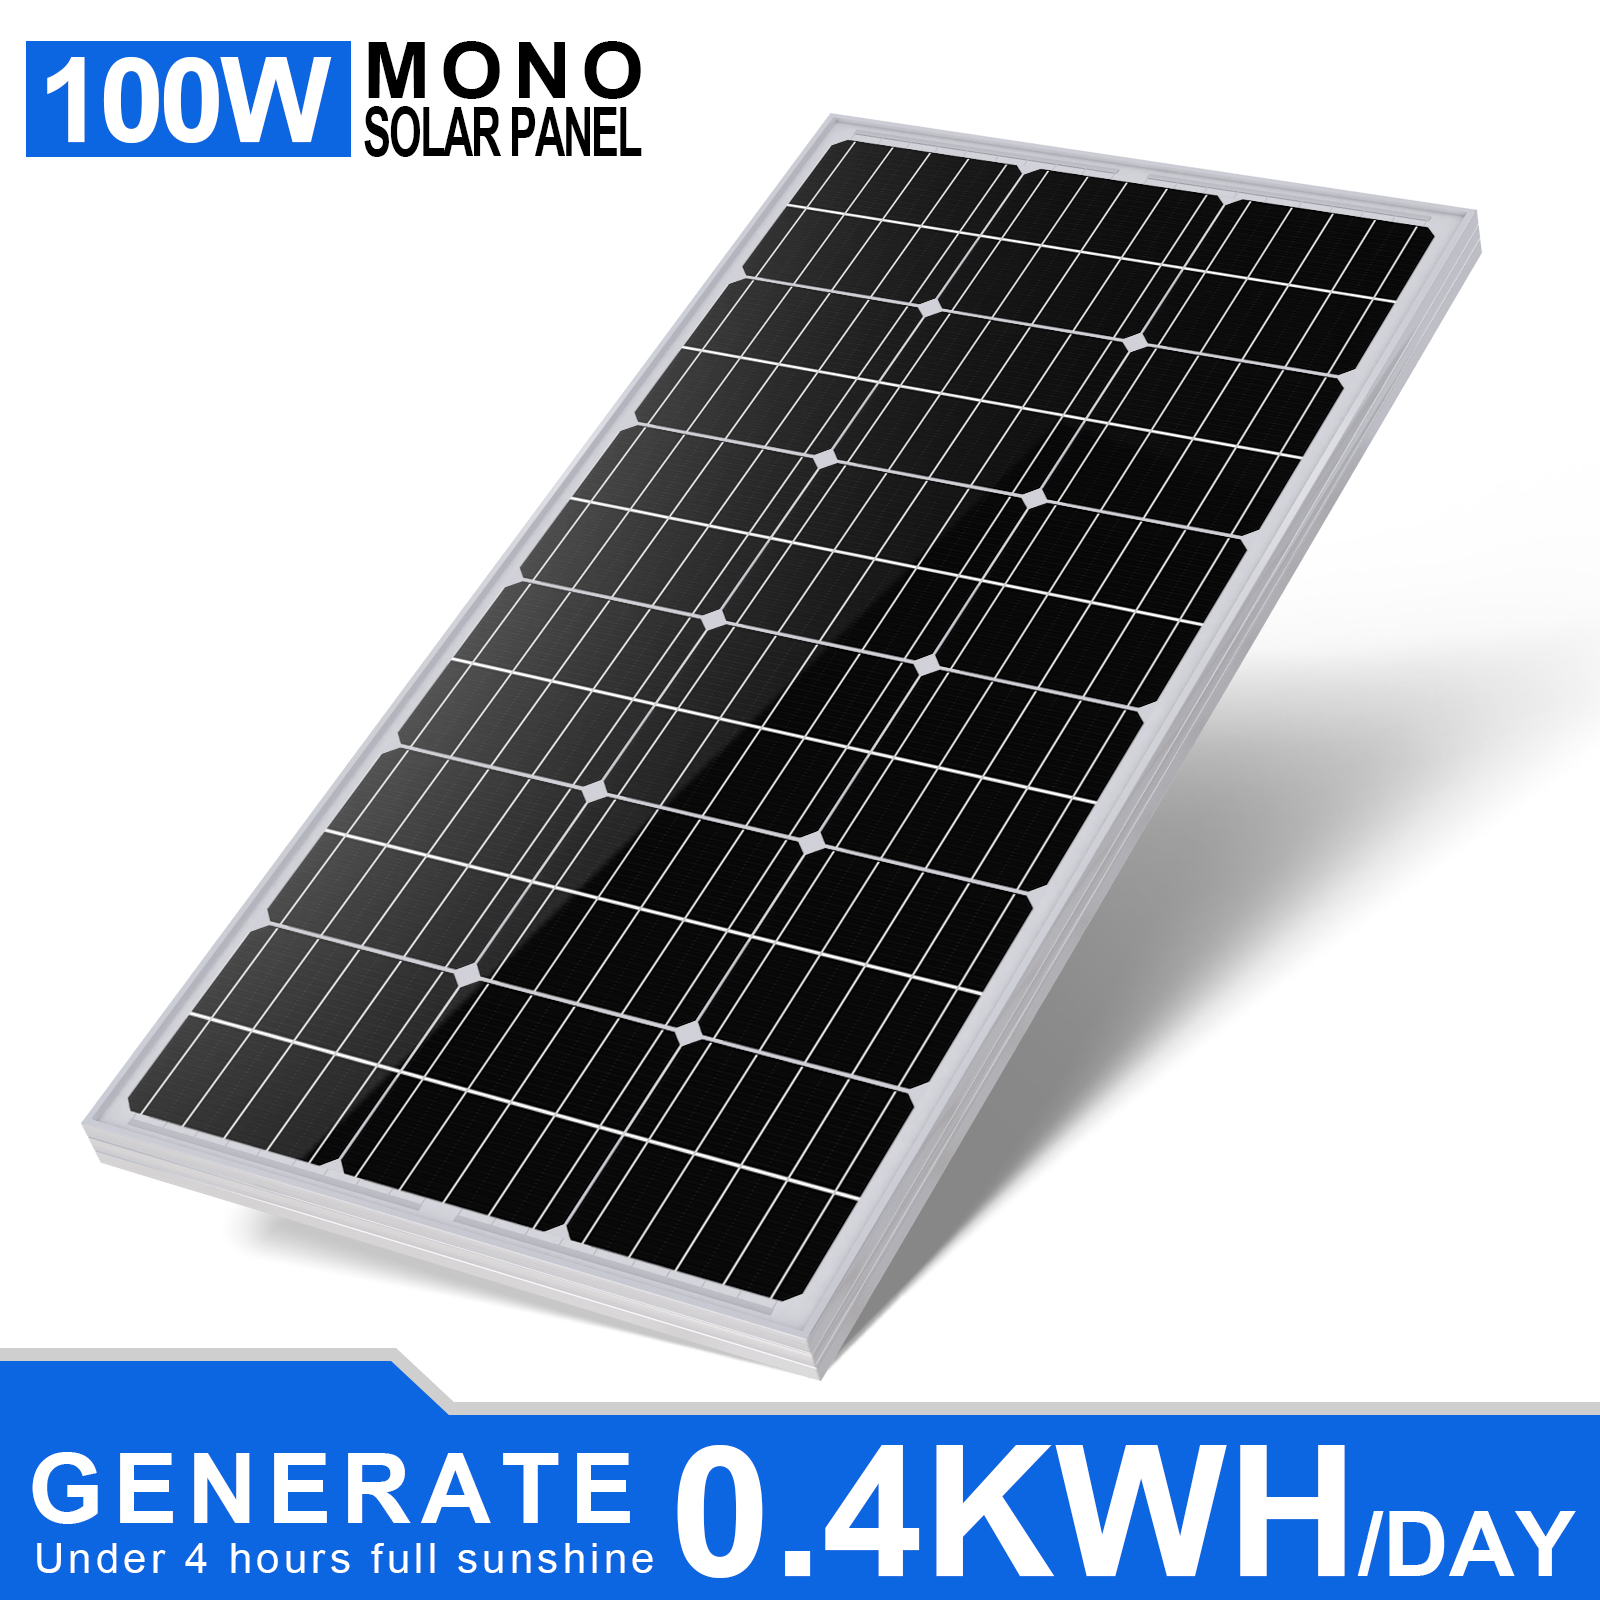 12-Volt-monokristallines Solarmodul für netzunabhängige Nutzung